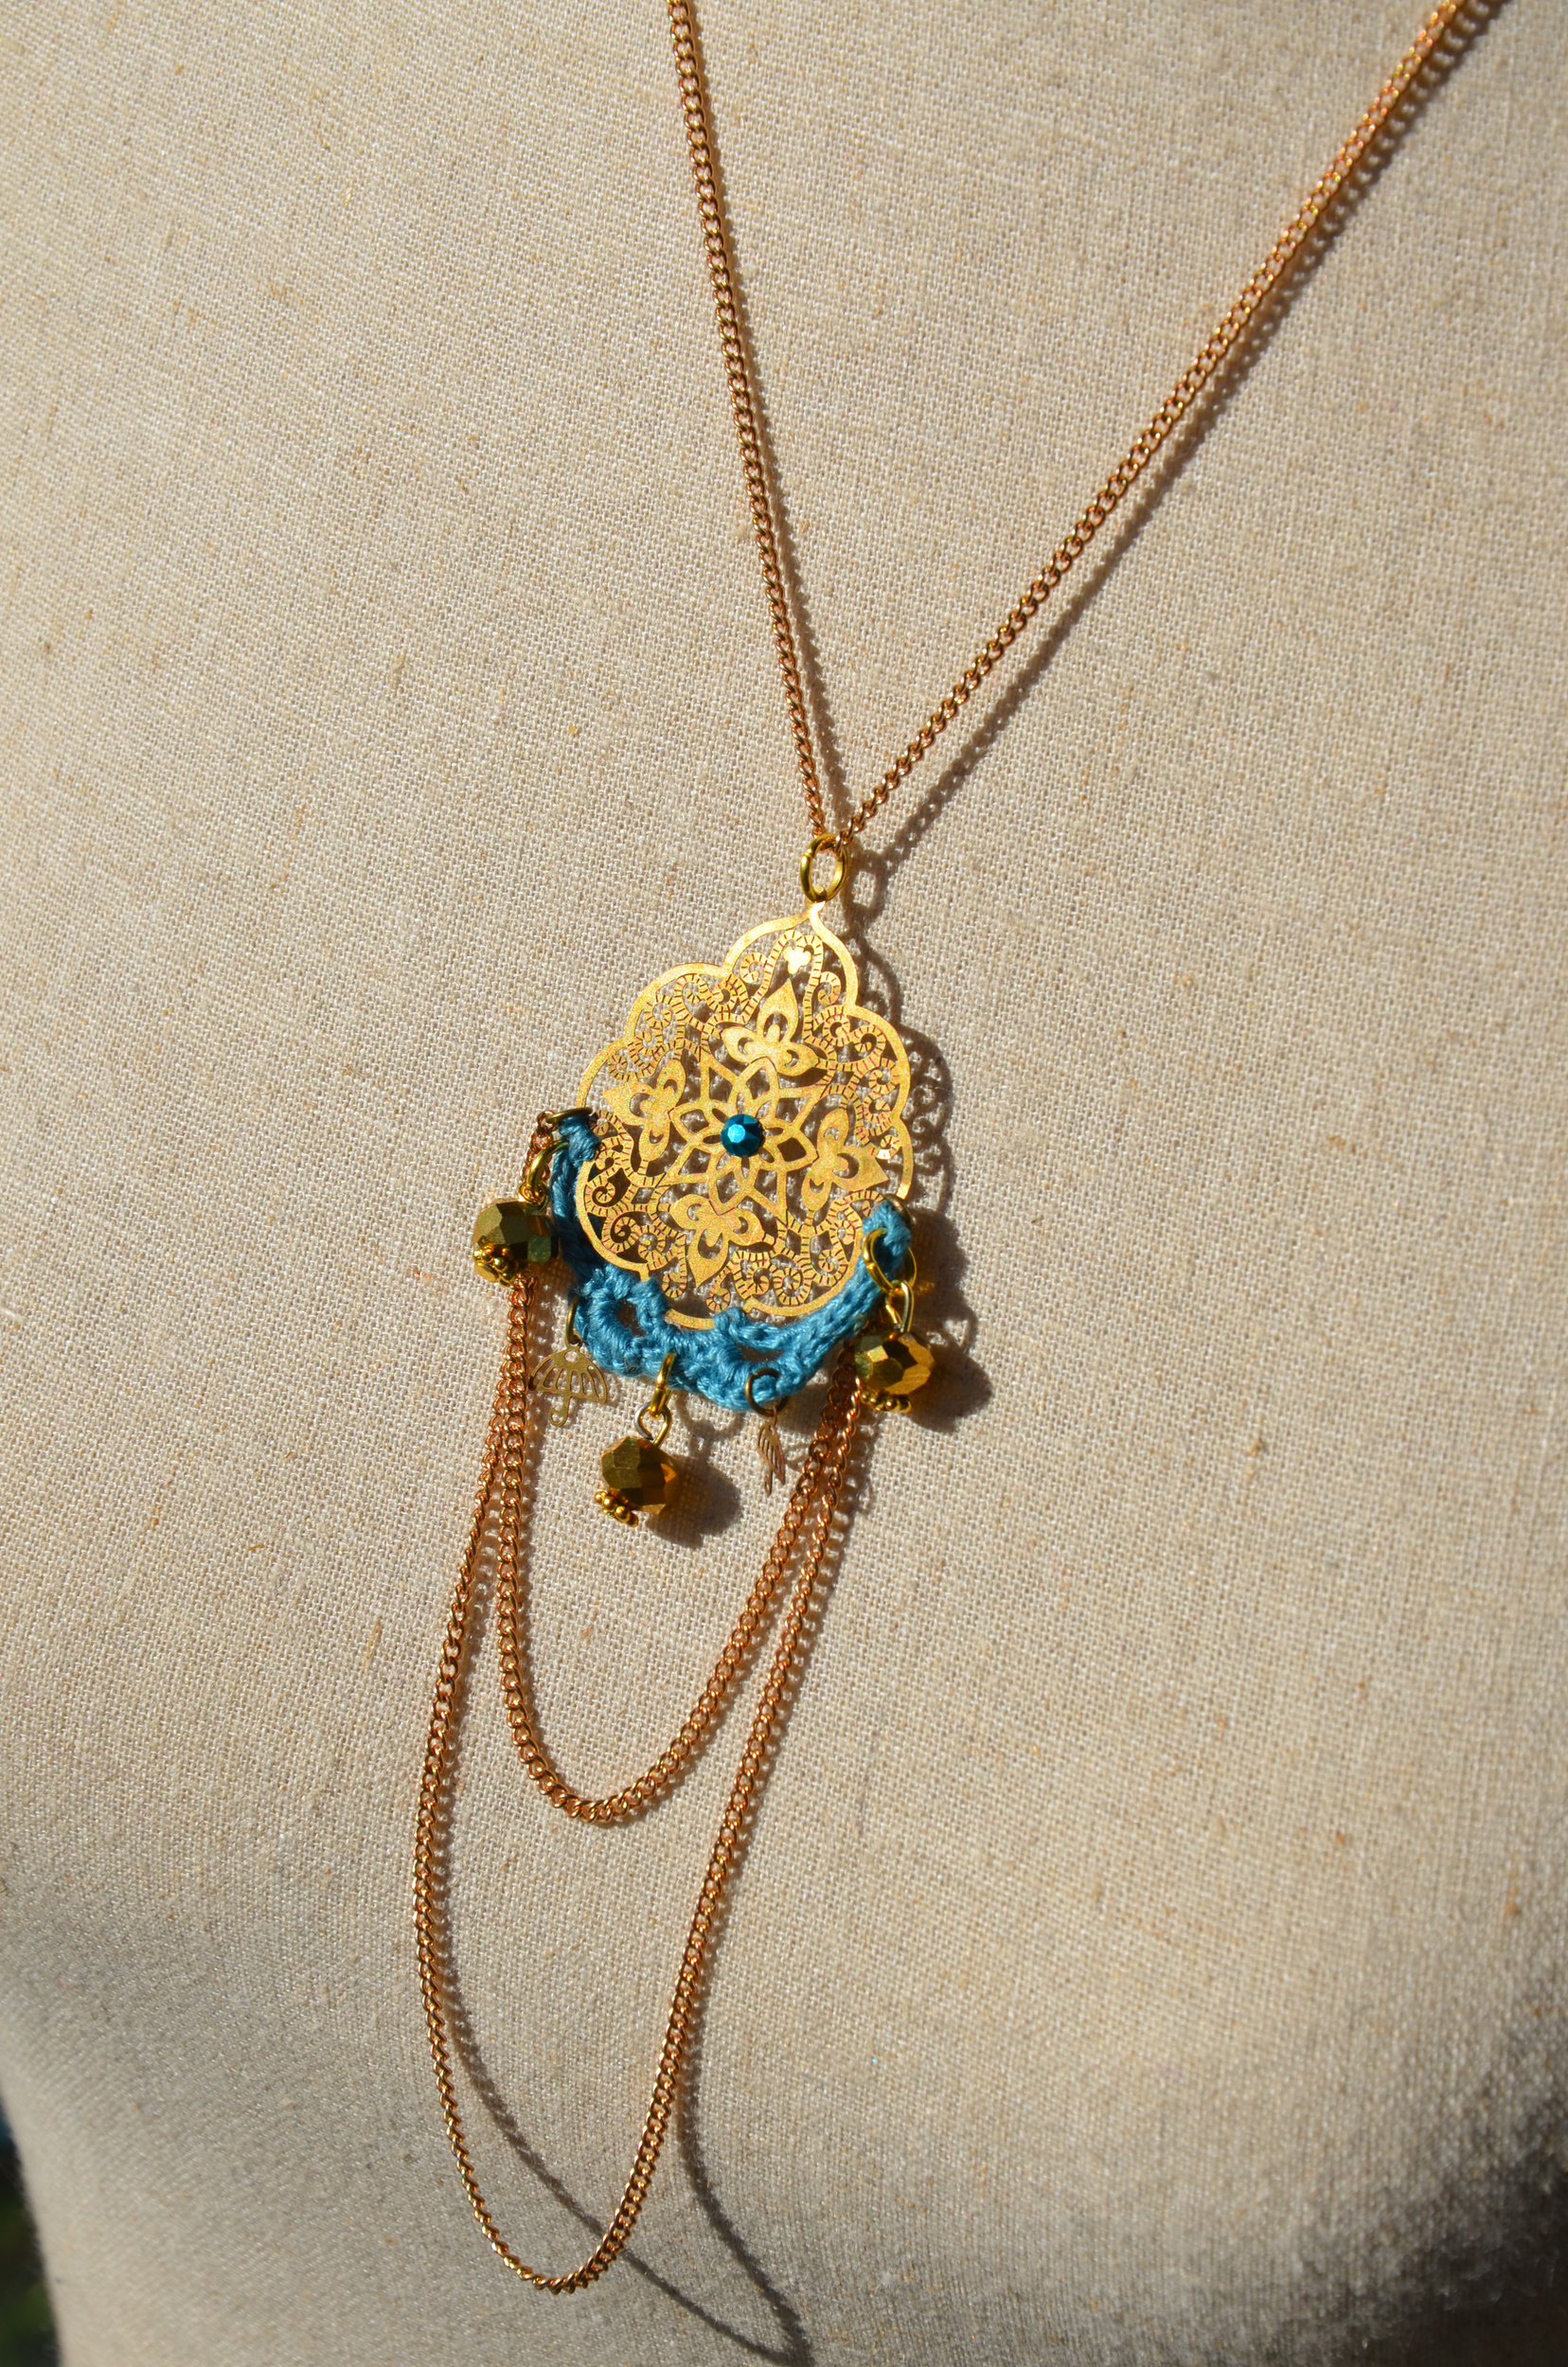 pendentif doré crocheté antique bleu turquoise fait main chainettes (2)